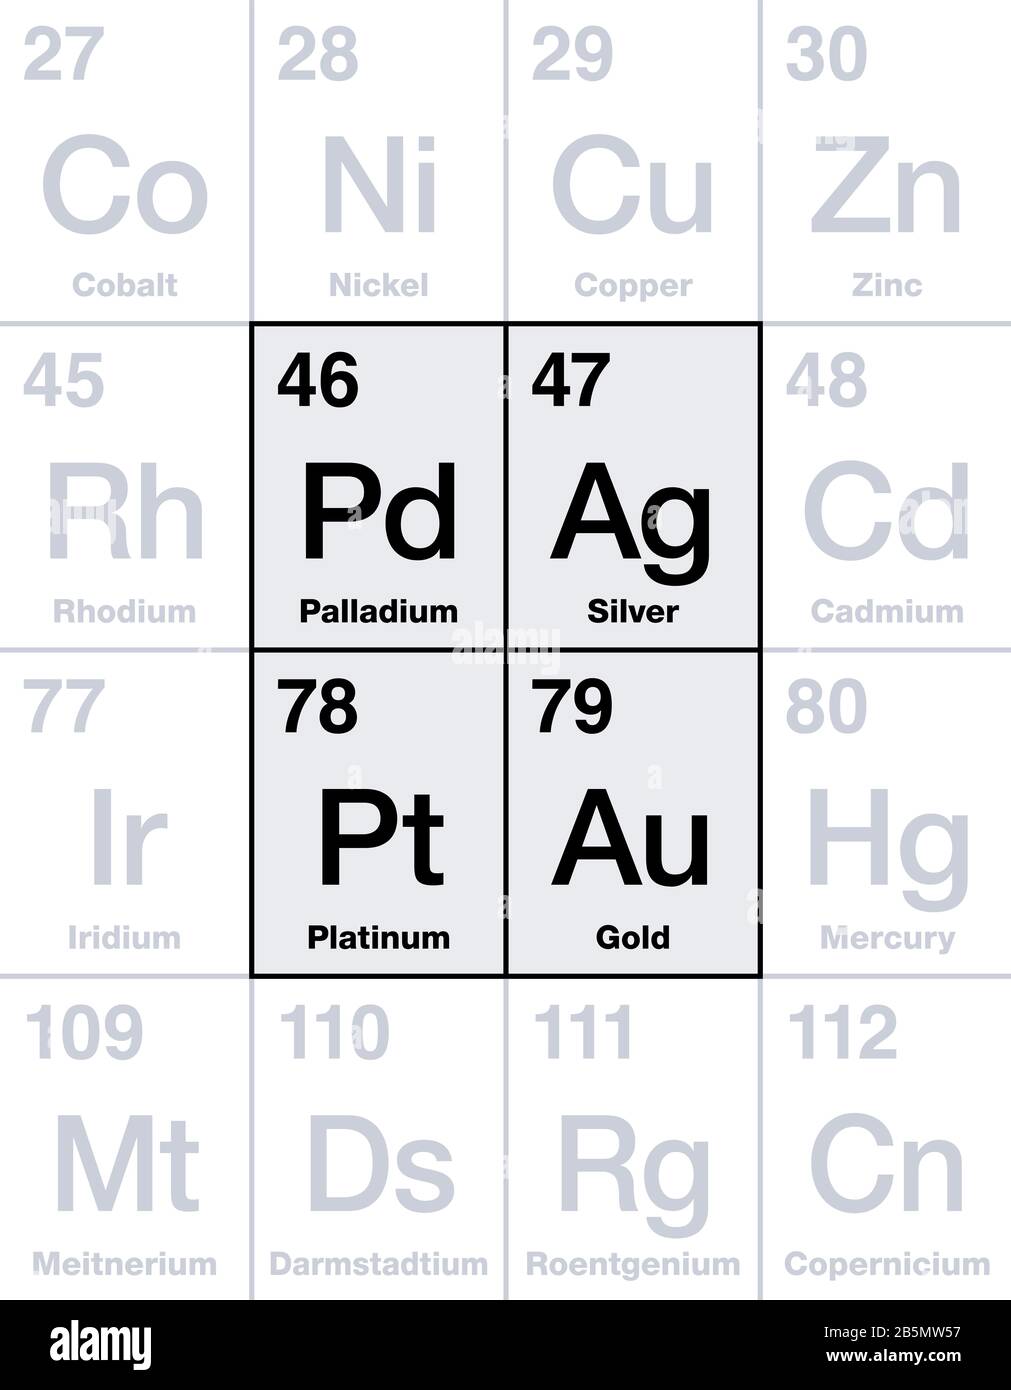 Metalli preziosi su tavola periodica. Oro, argento, platino e palladio, elementi chimici ad alto valore economico, considerati come un investimento. Foto Stock